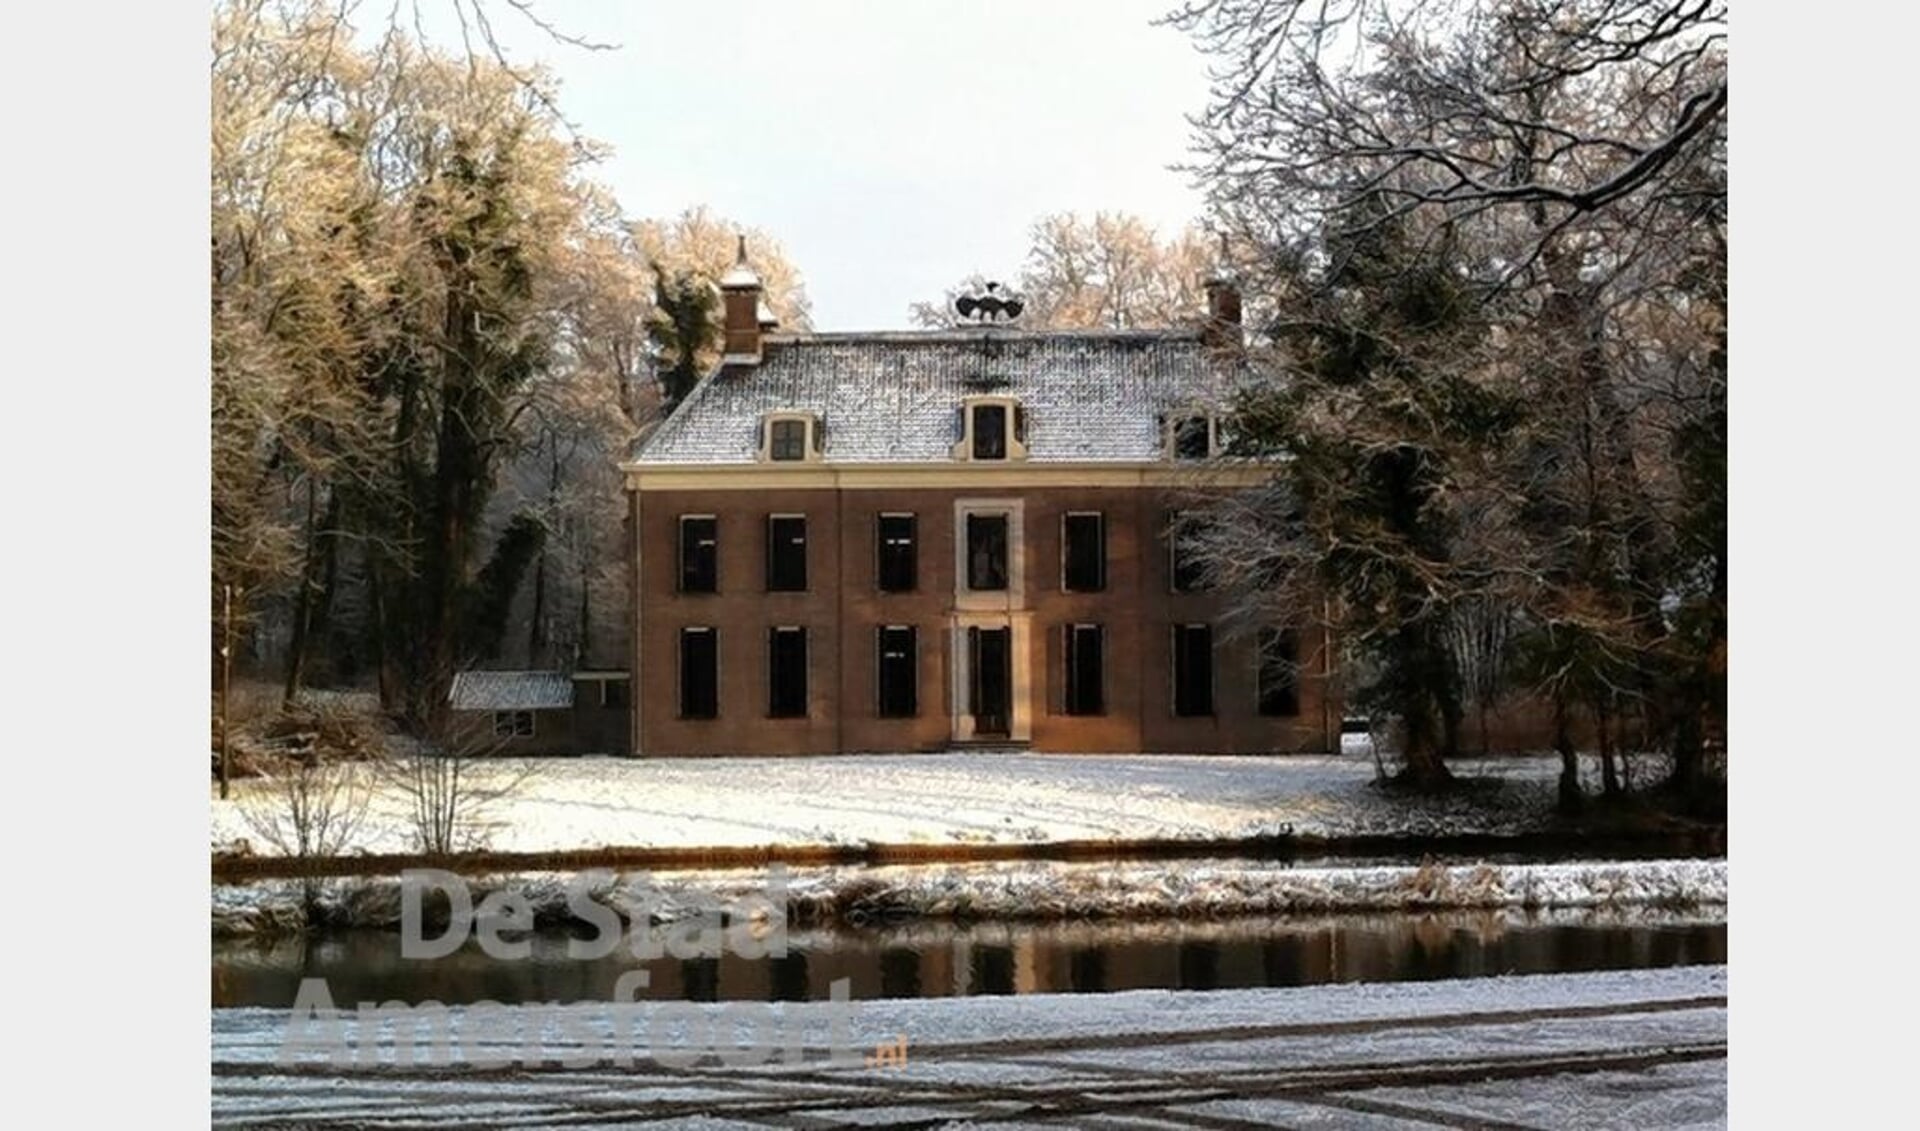 Landhuis Oud Amelisweerd in Bunnik, tot vorig jaar de locatie van het MOA. 